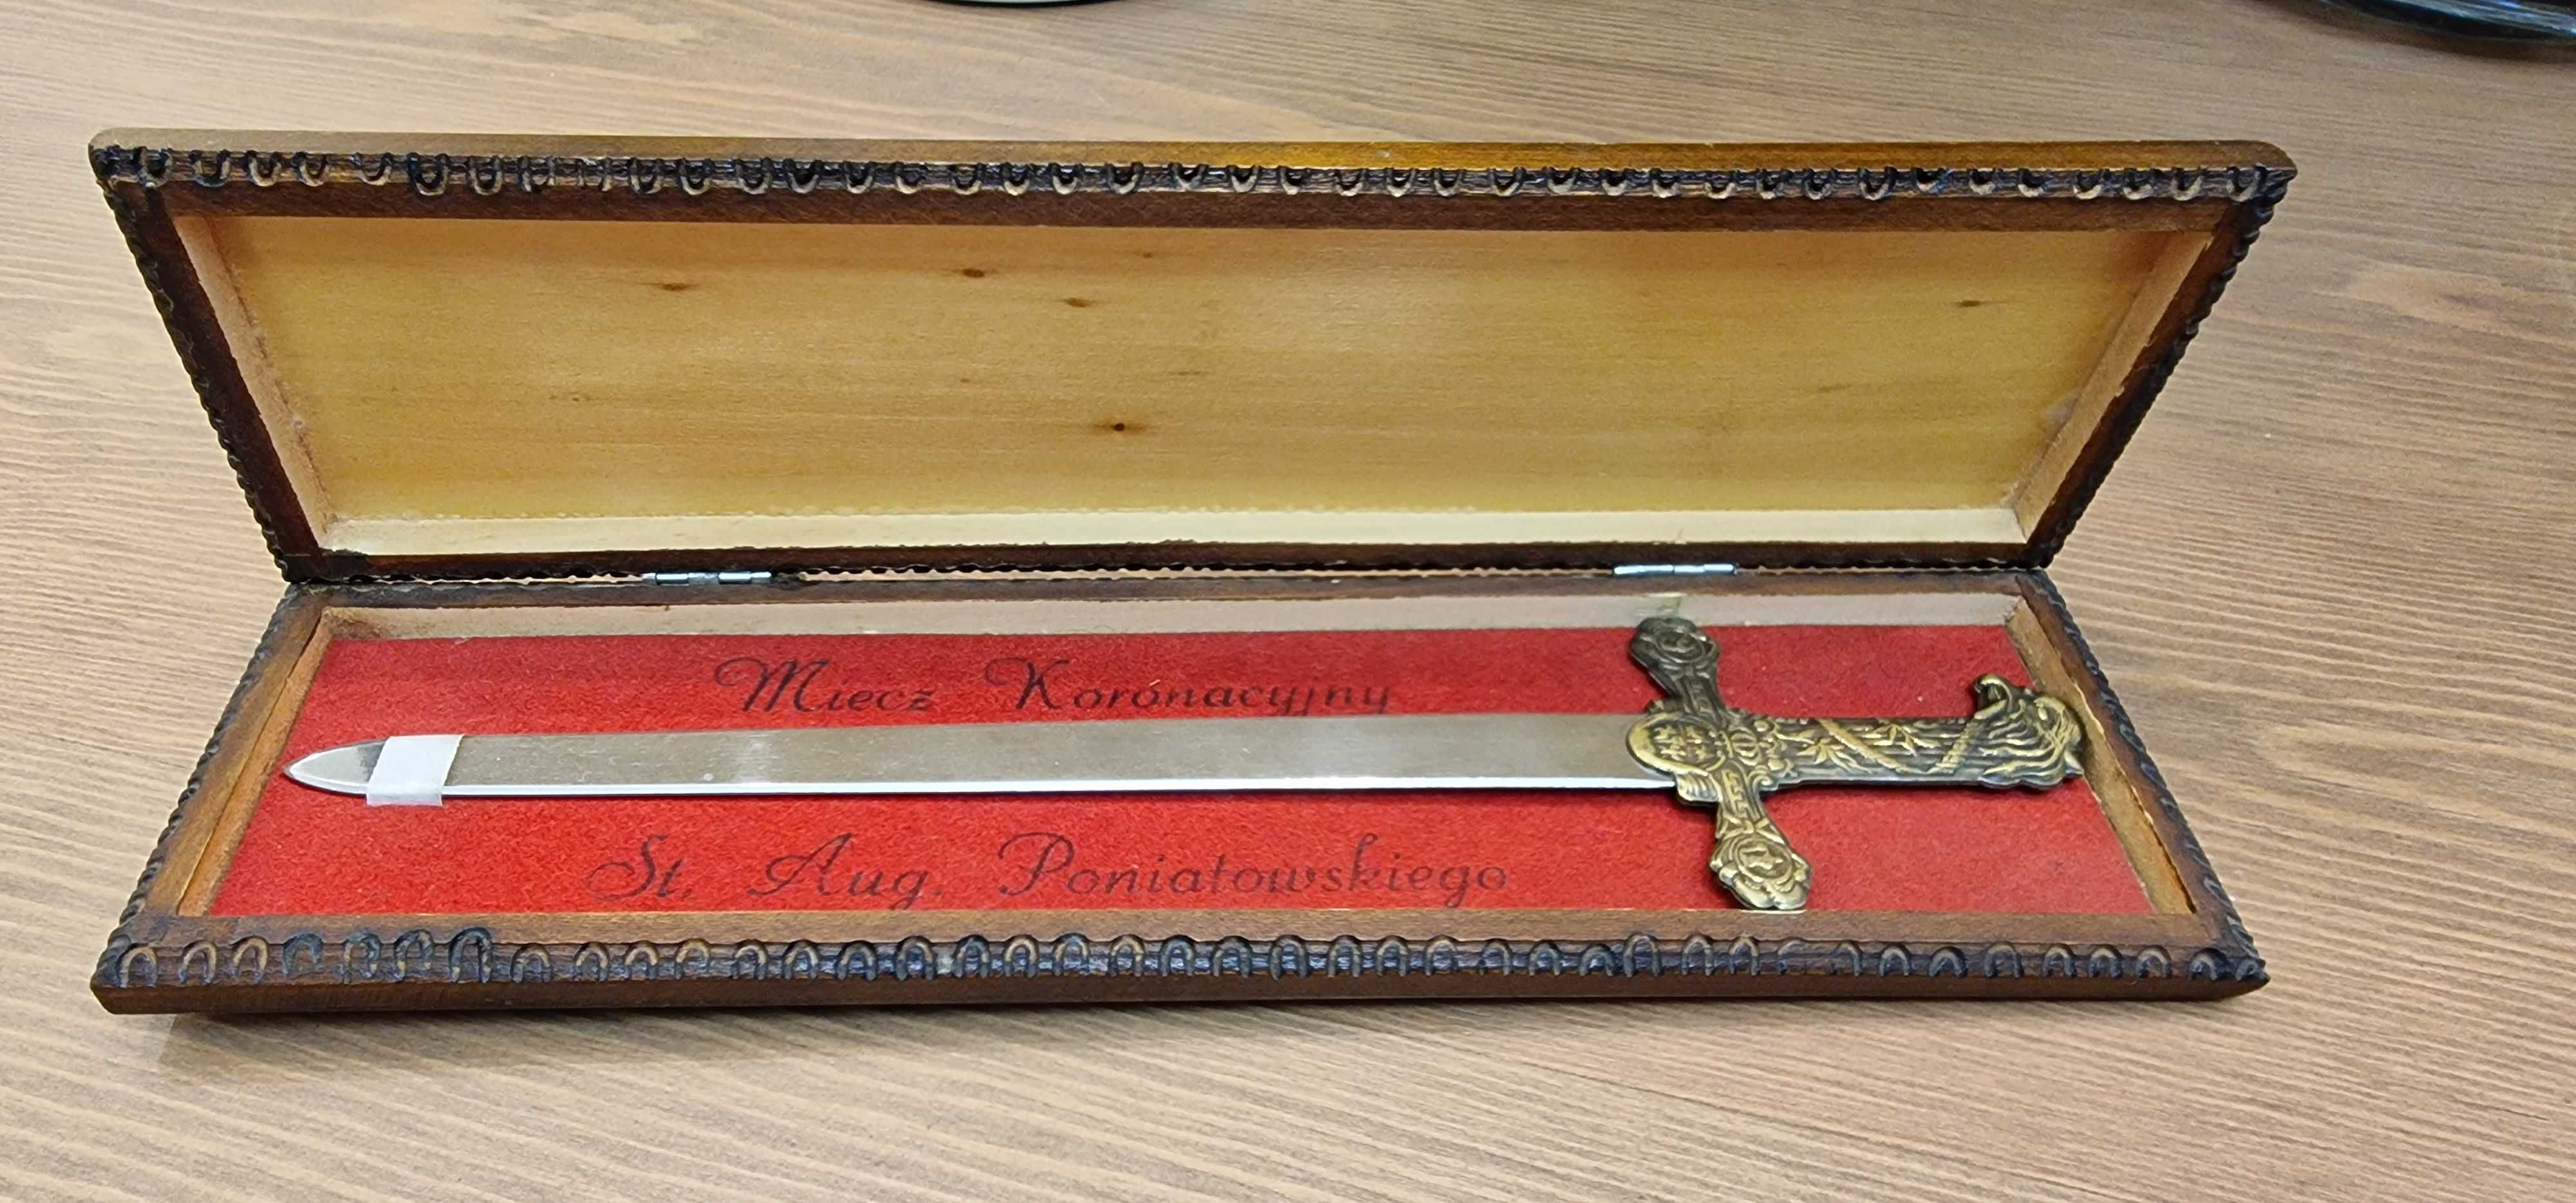 mieczyk szabelka do listów ozdoba lub prezent kolekcjonerski